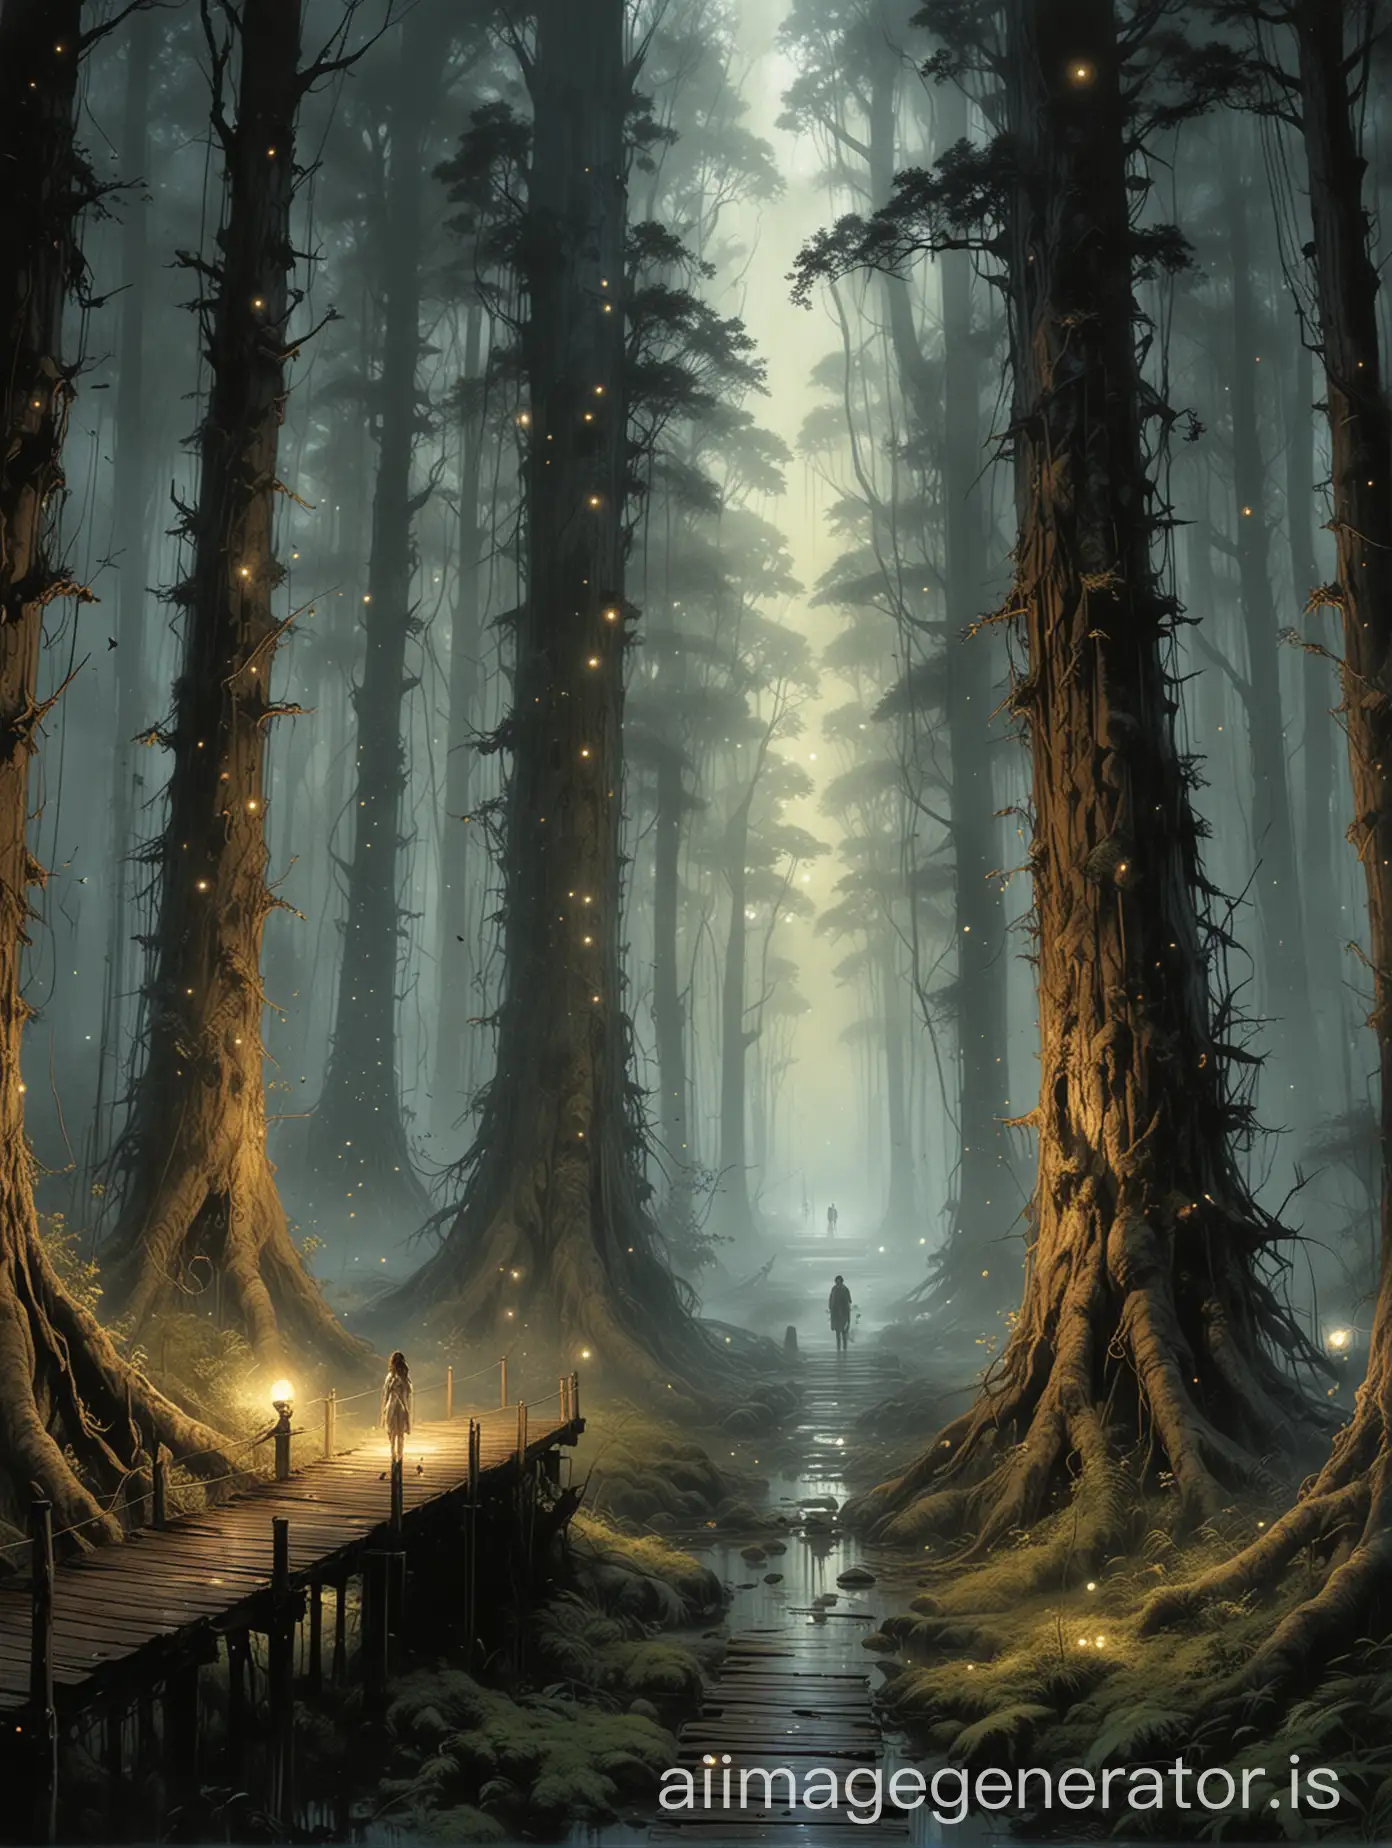 Luis Royo art style, Hutan dengan pohon-pohon besar yang memiliki wajah dan bisa berbicara, dikelilingi oleh cahaya kunang-kunang dan jalan setapak yang bercahaya